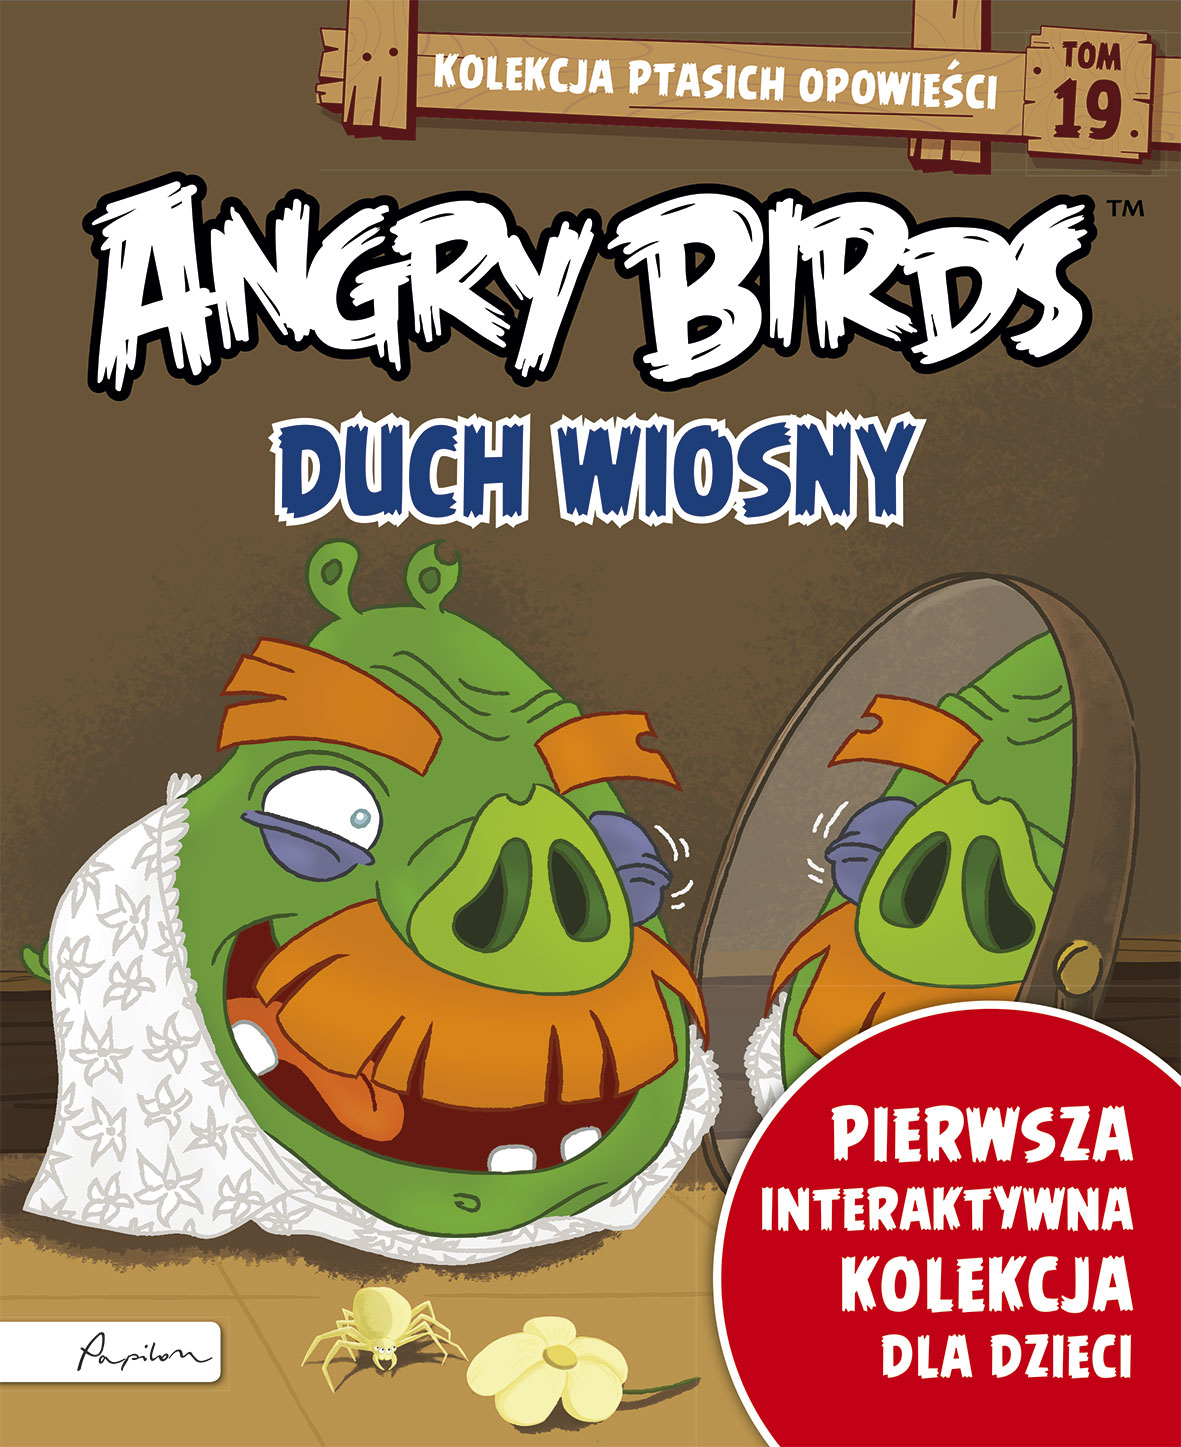 Angry Birds. Kolekcja ptasich opowieści 19. Duch wiosny